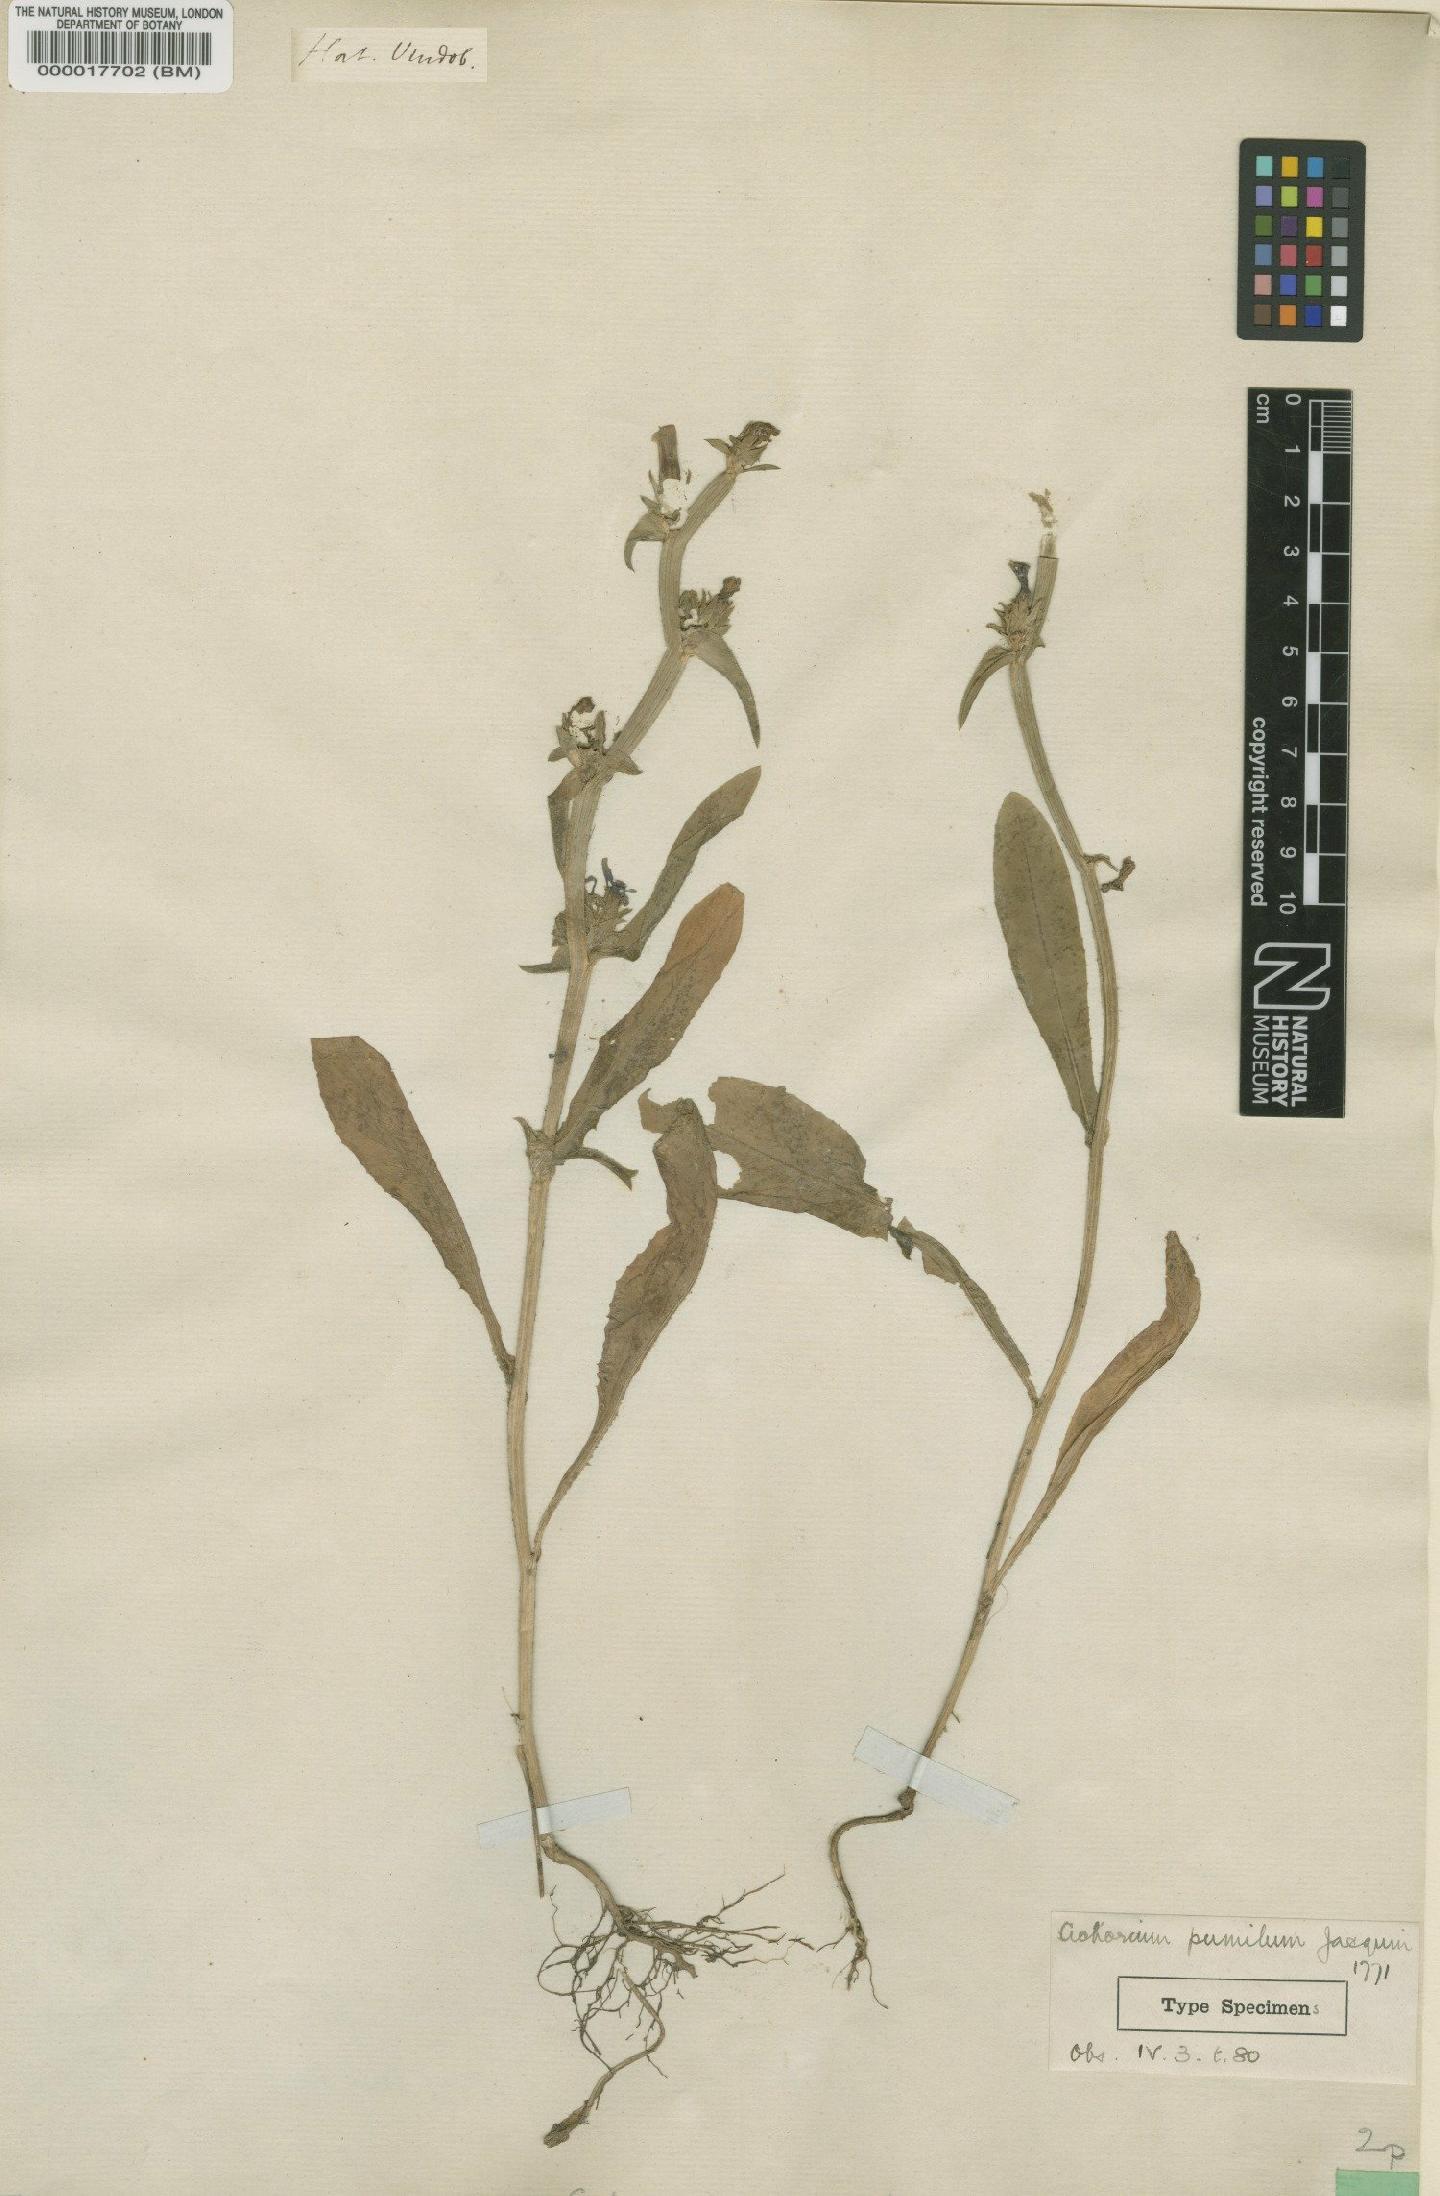 To NHMUK collection (Cichorium pumilum Jacq.; Type; NHMUK:ecatalogue:2932162)